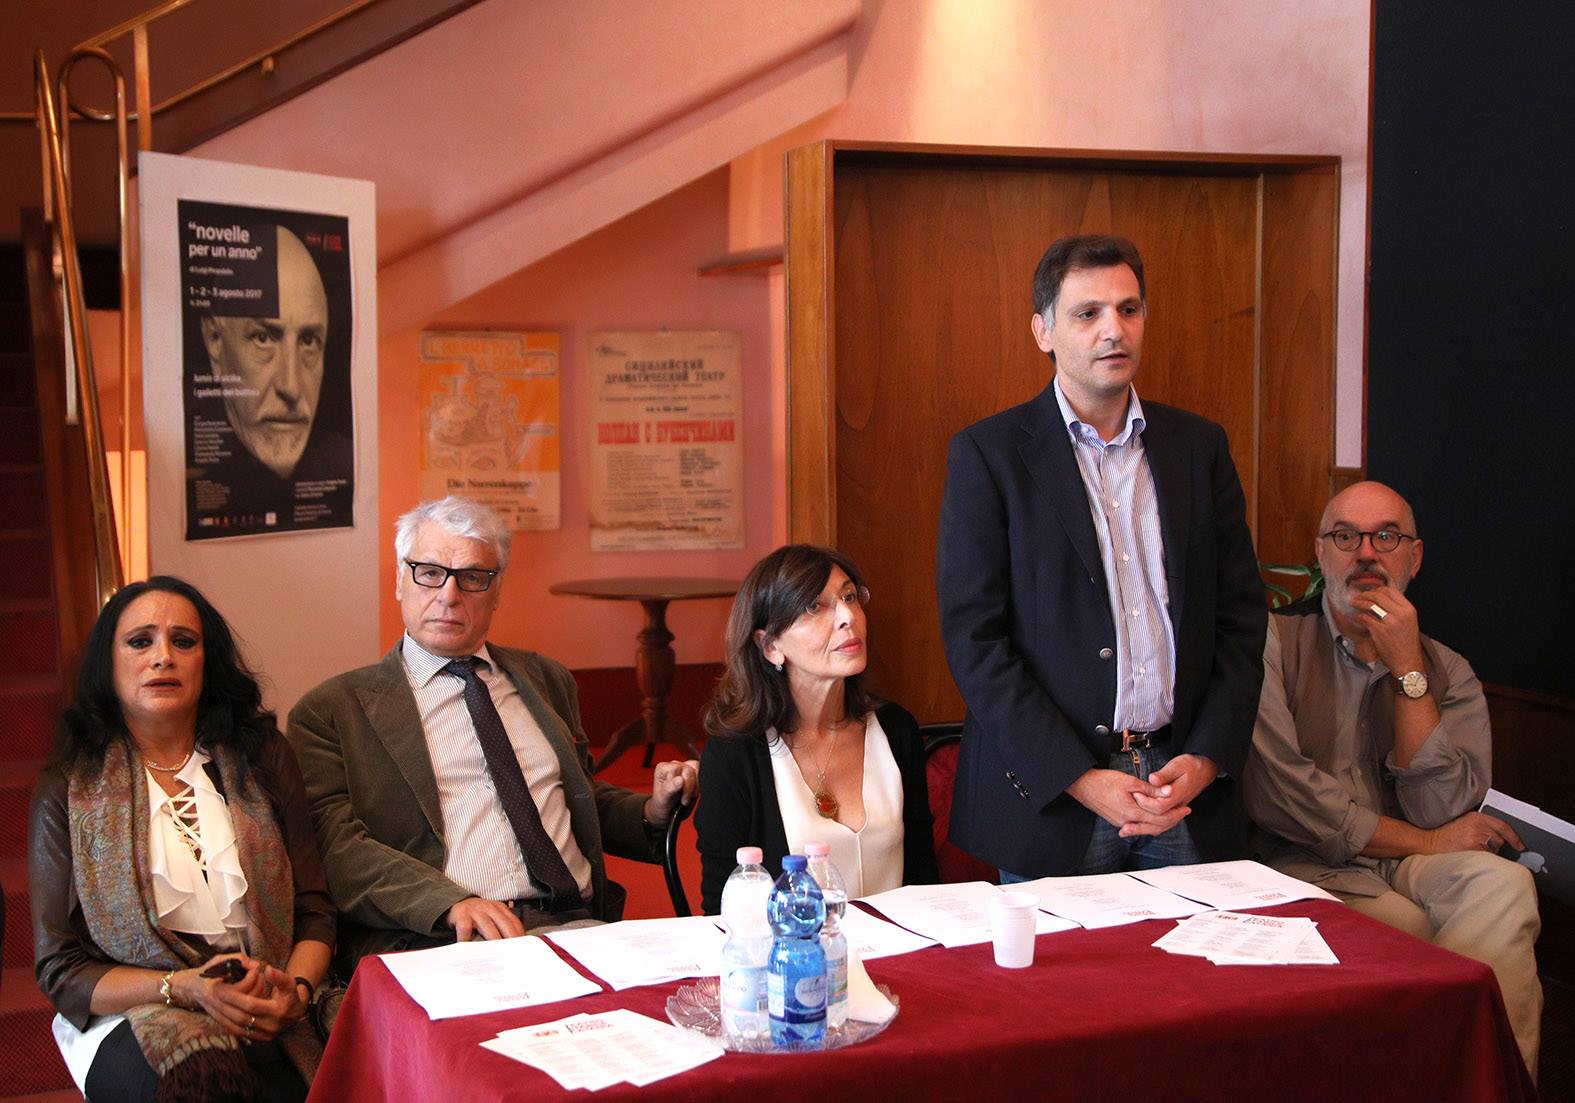 Guia Jelo, Placido, Lina Scalisi e Massimo Tamalio